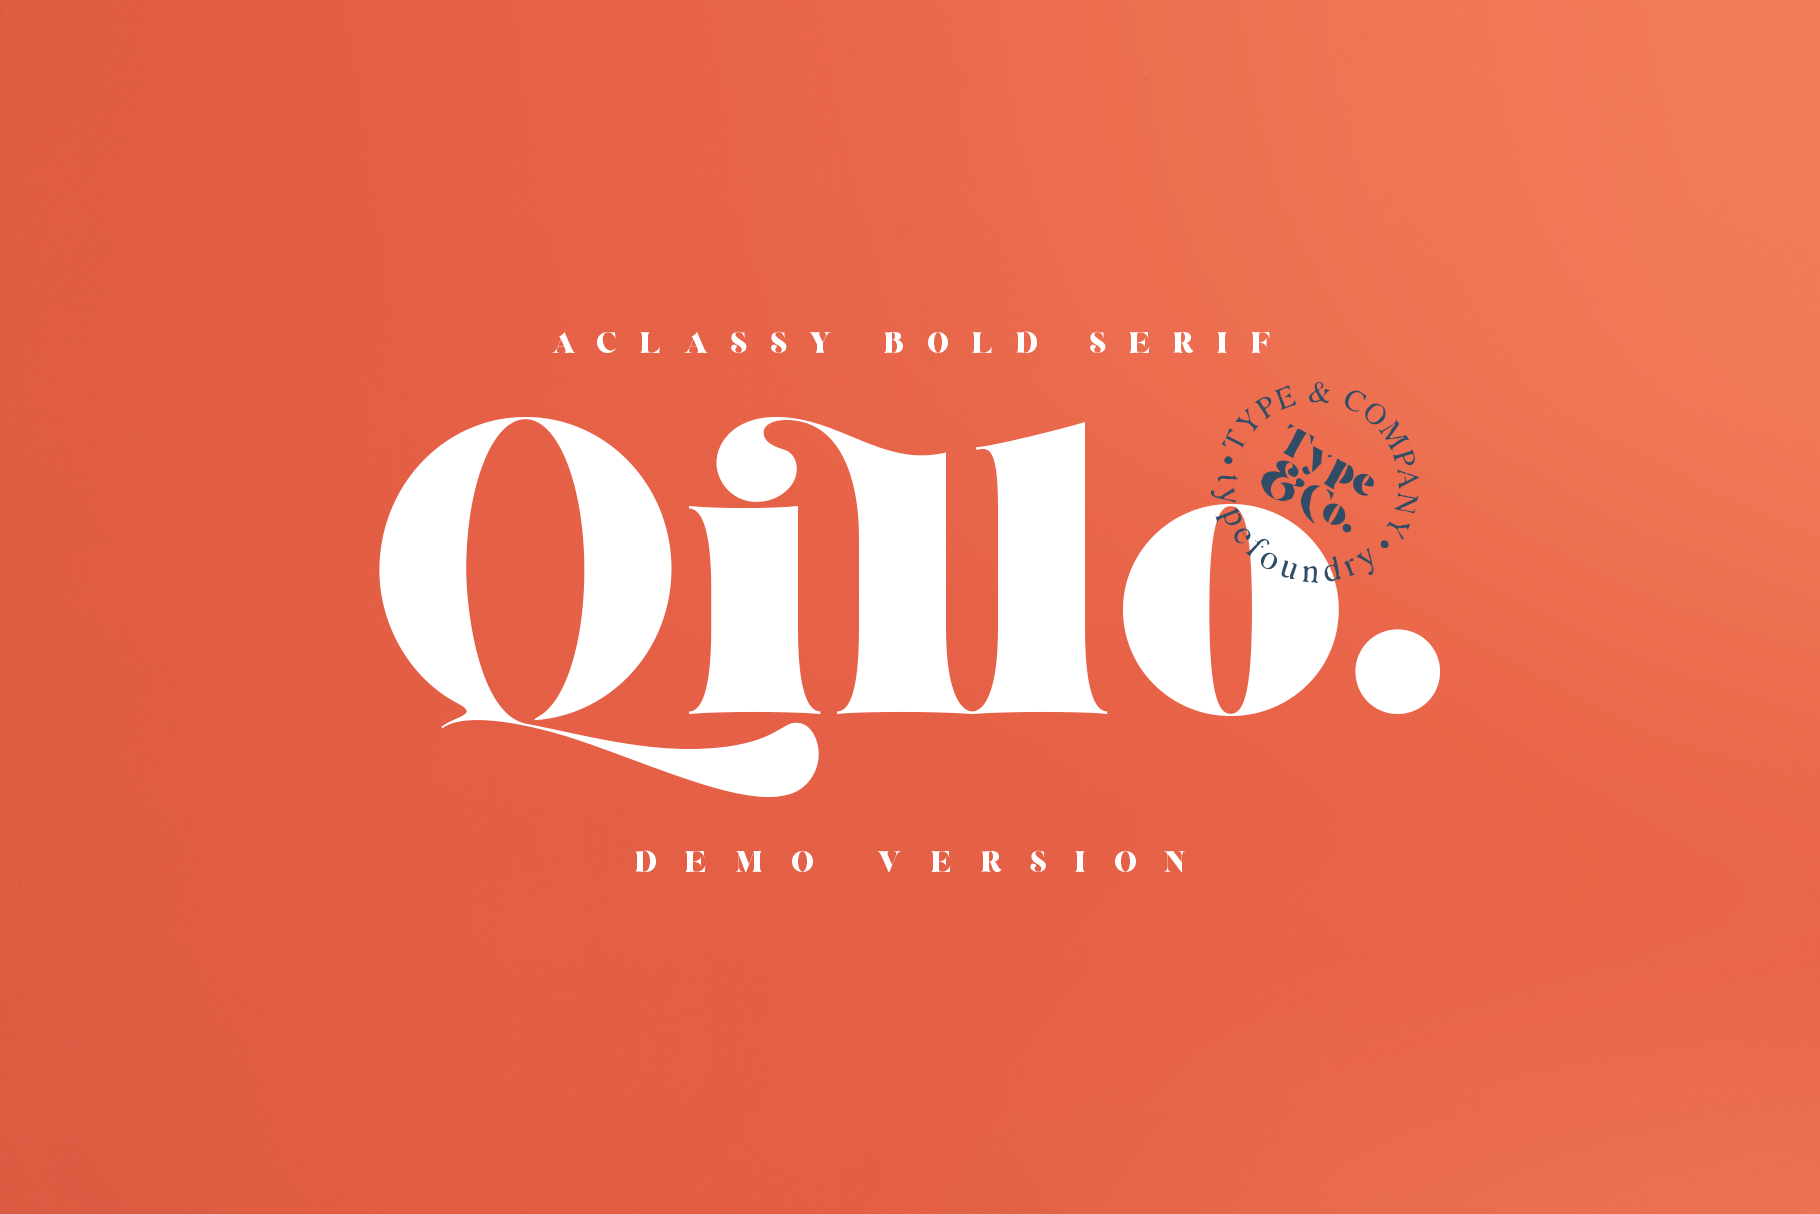 Qillo Demo Version